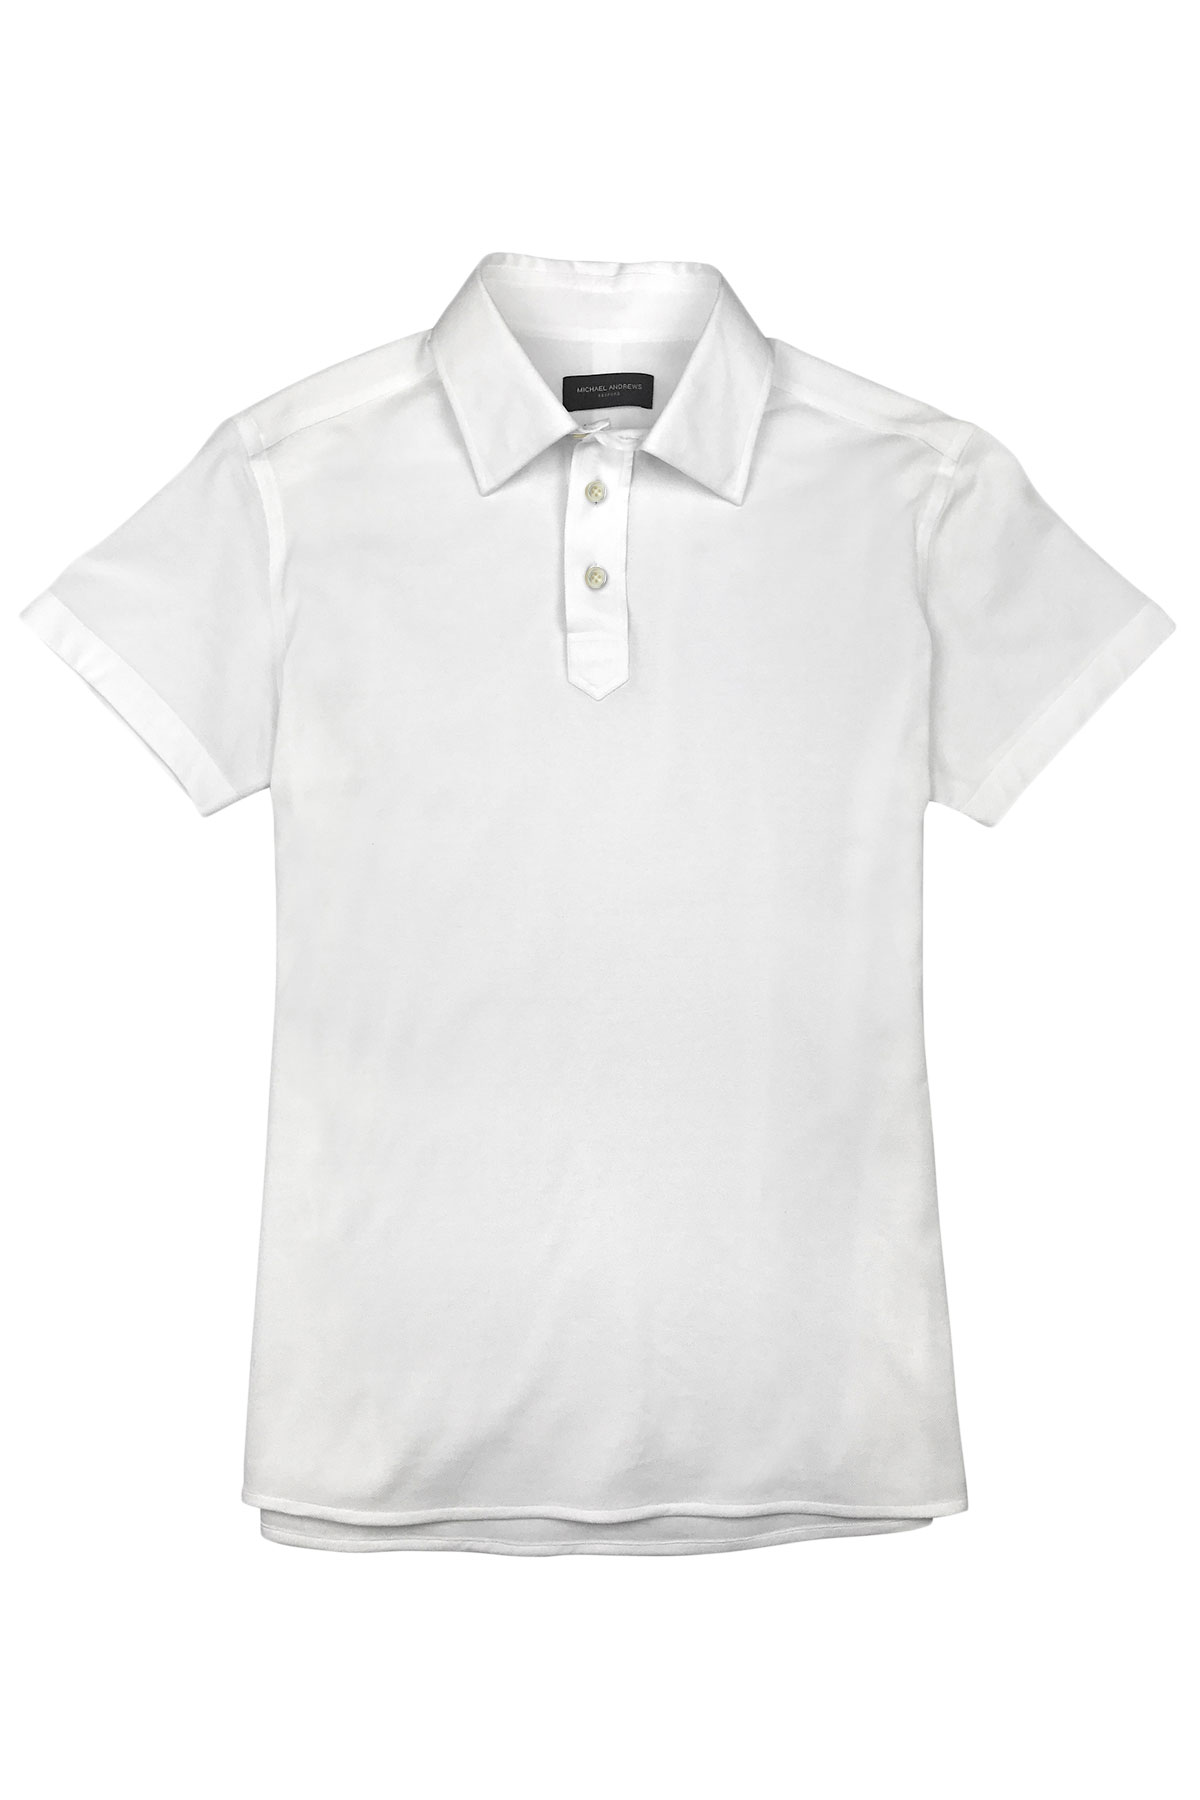 White Pique Short Sleeve Polo Shirt